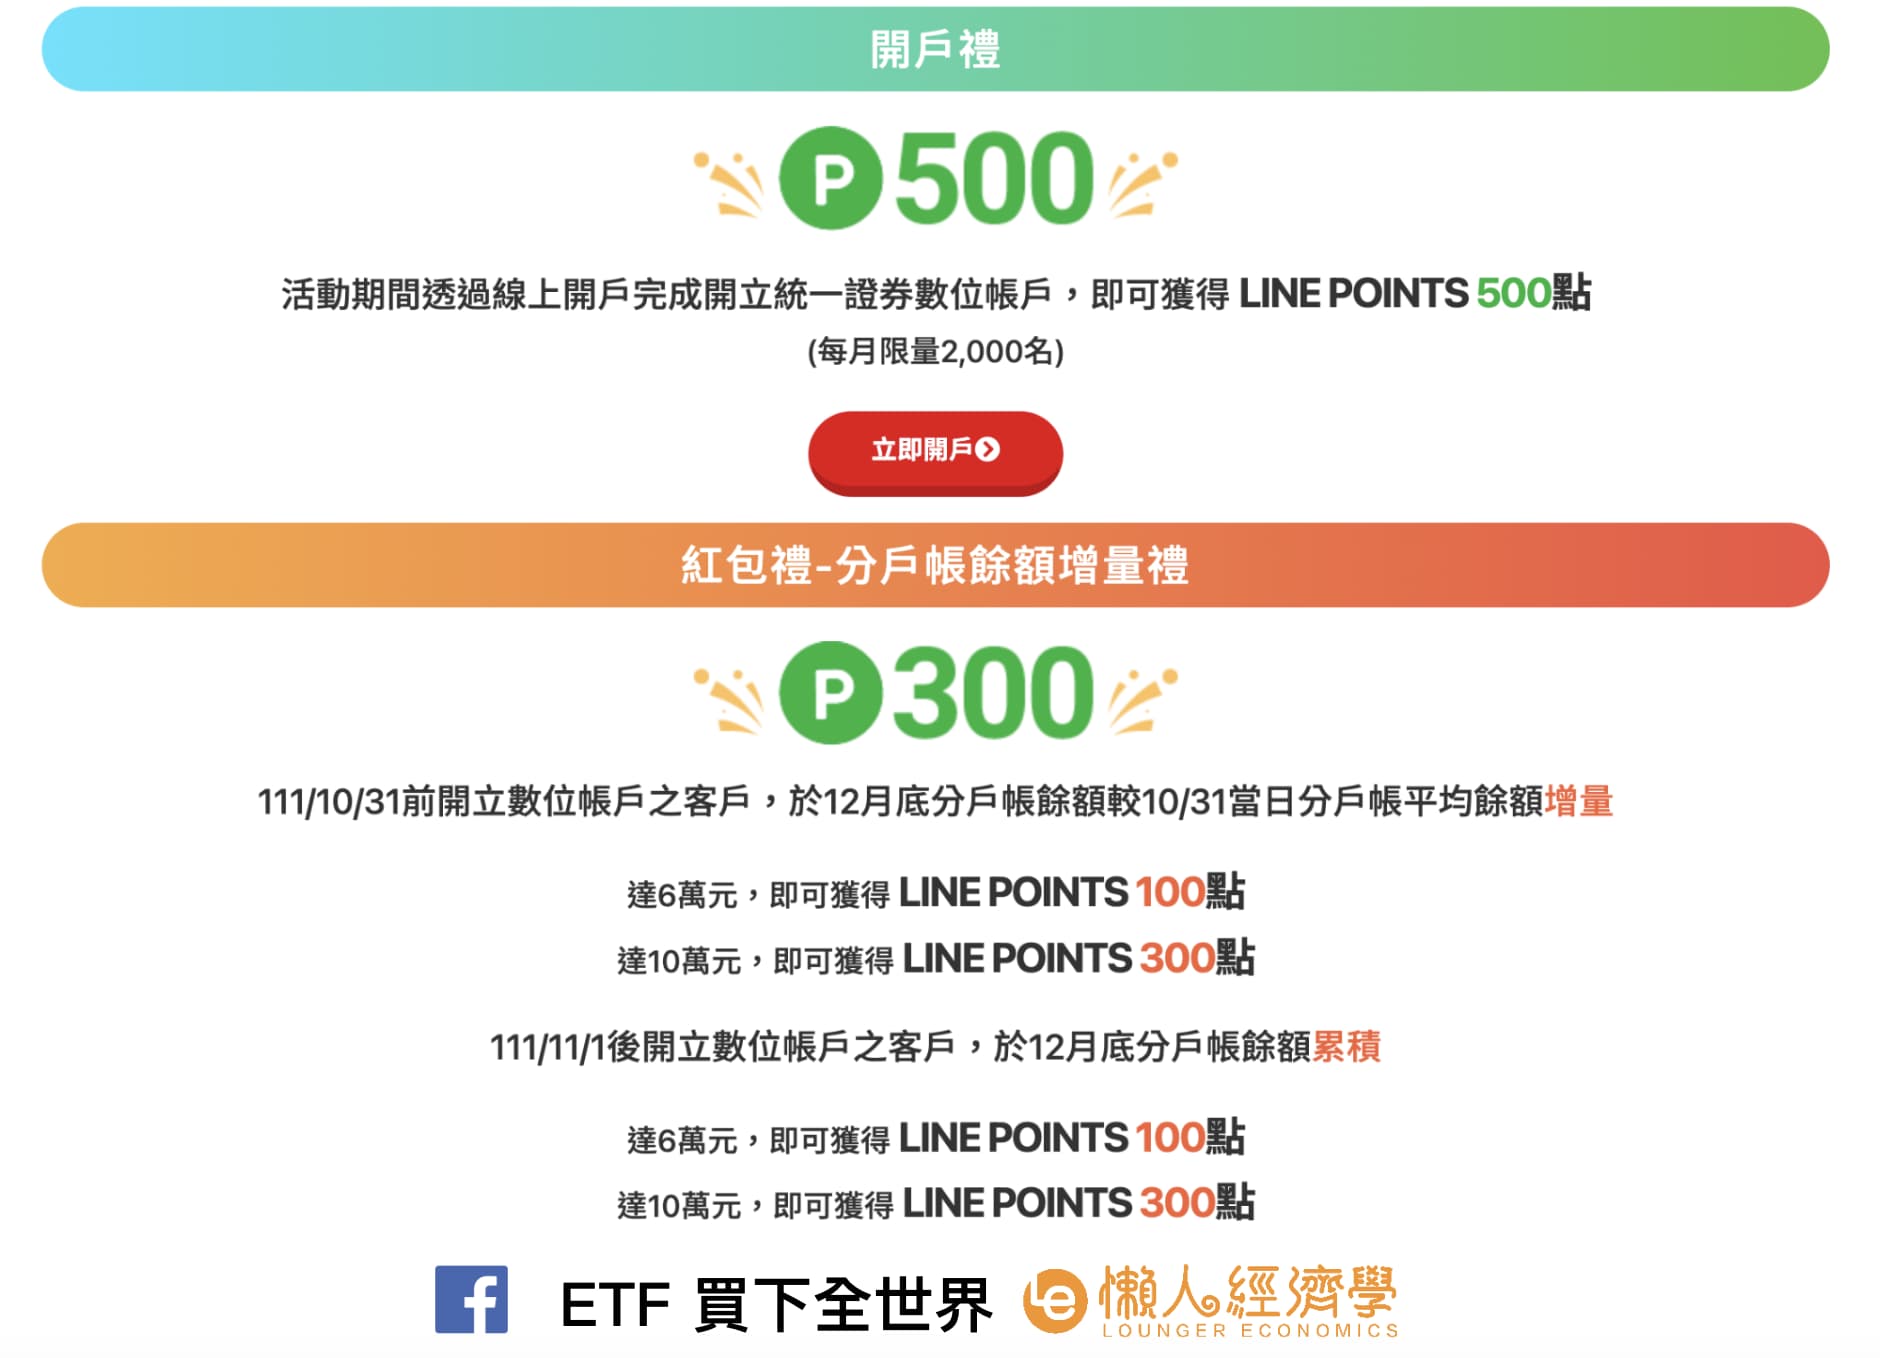 統一證券數位帳戶開戶優惠，最高可得 500 Line Points